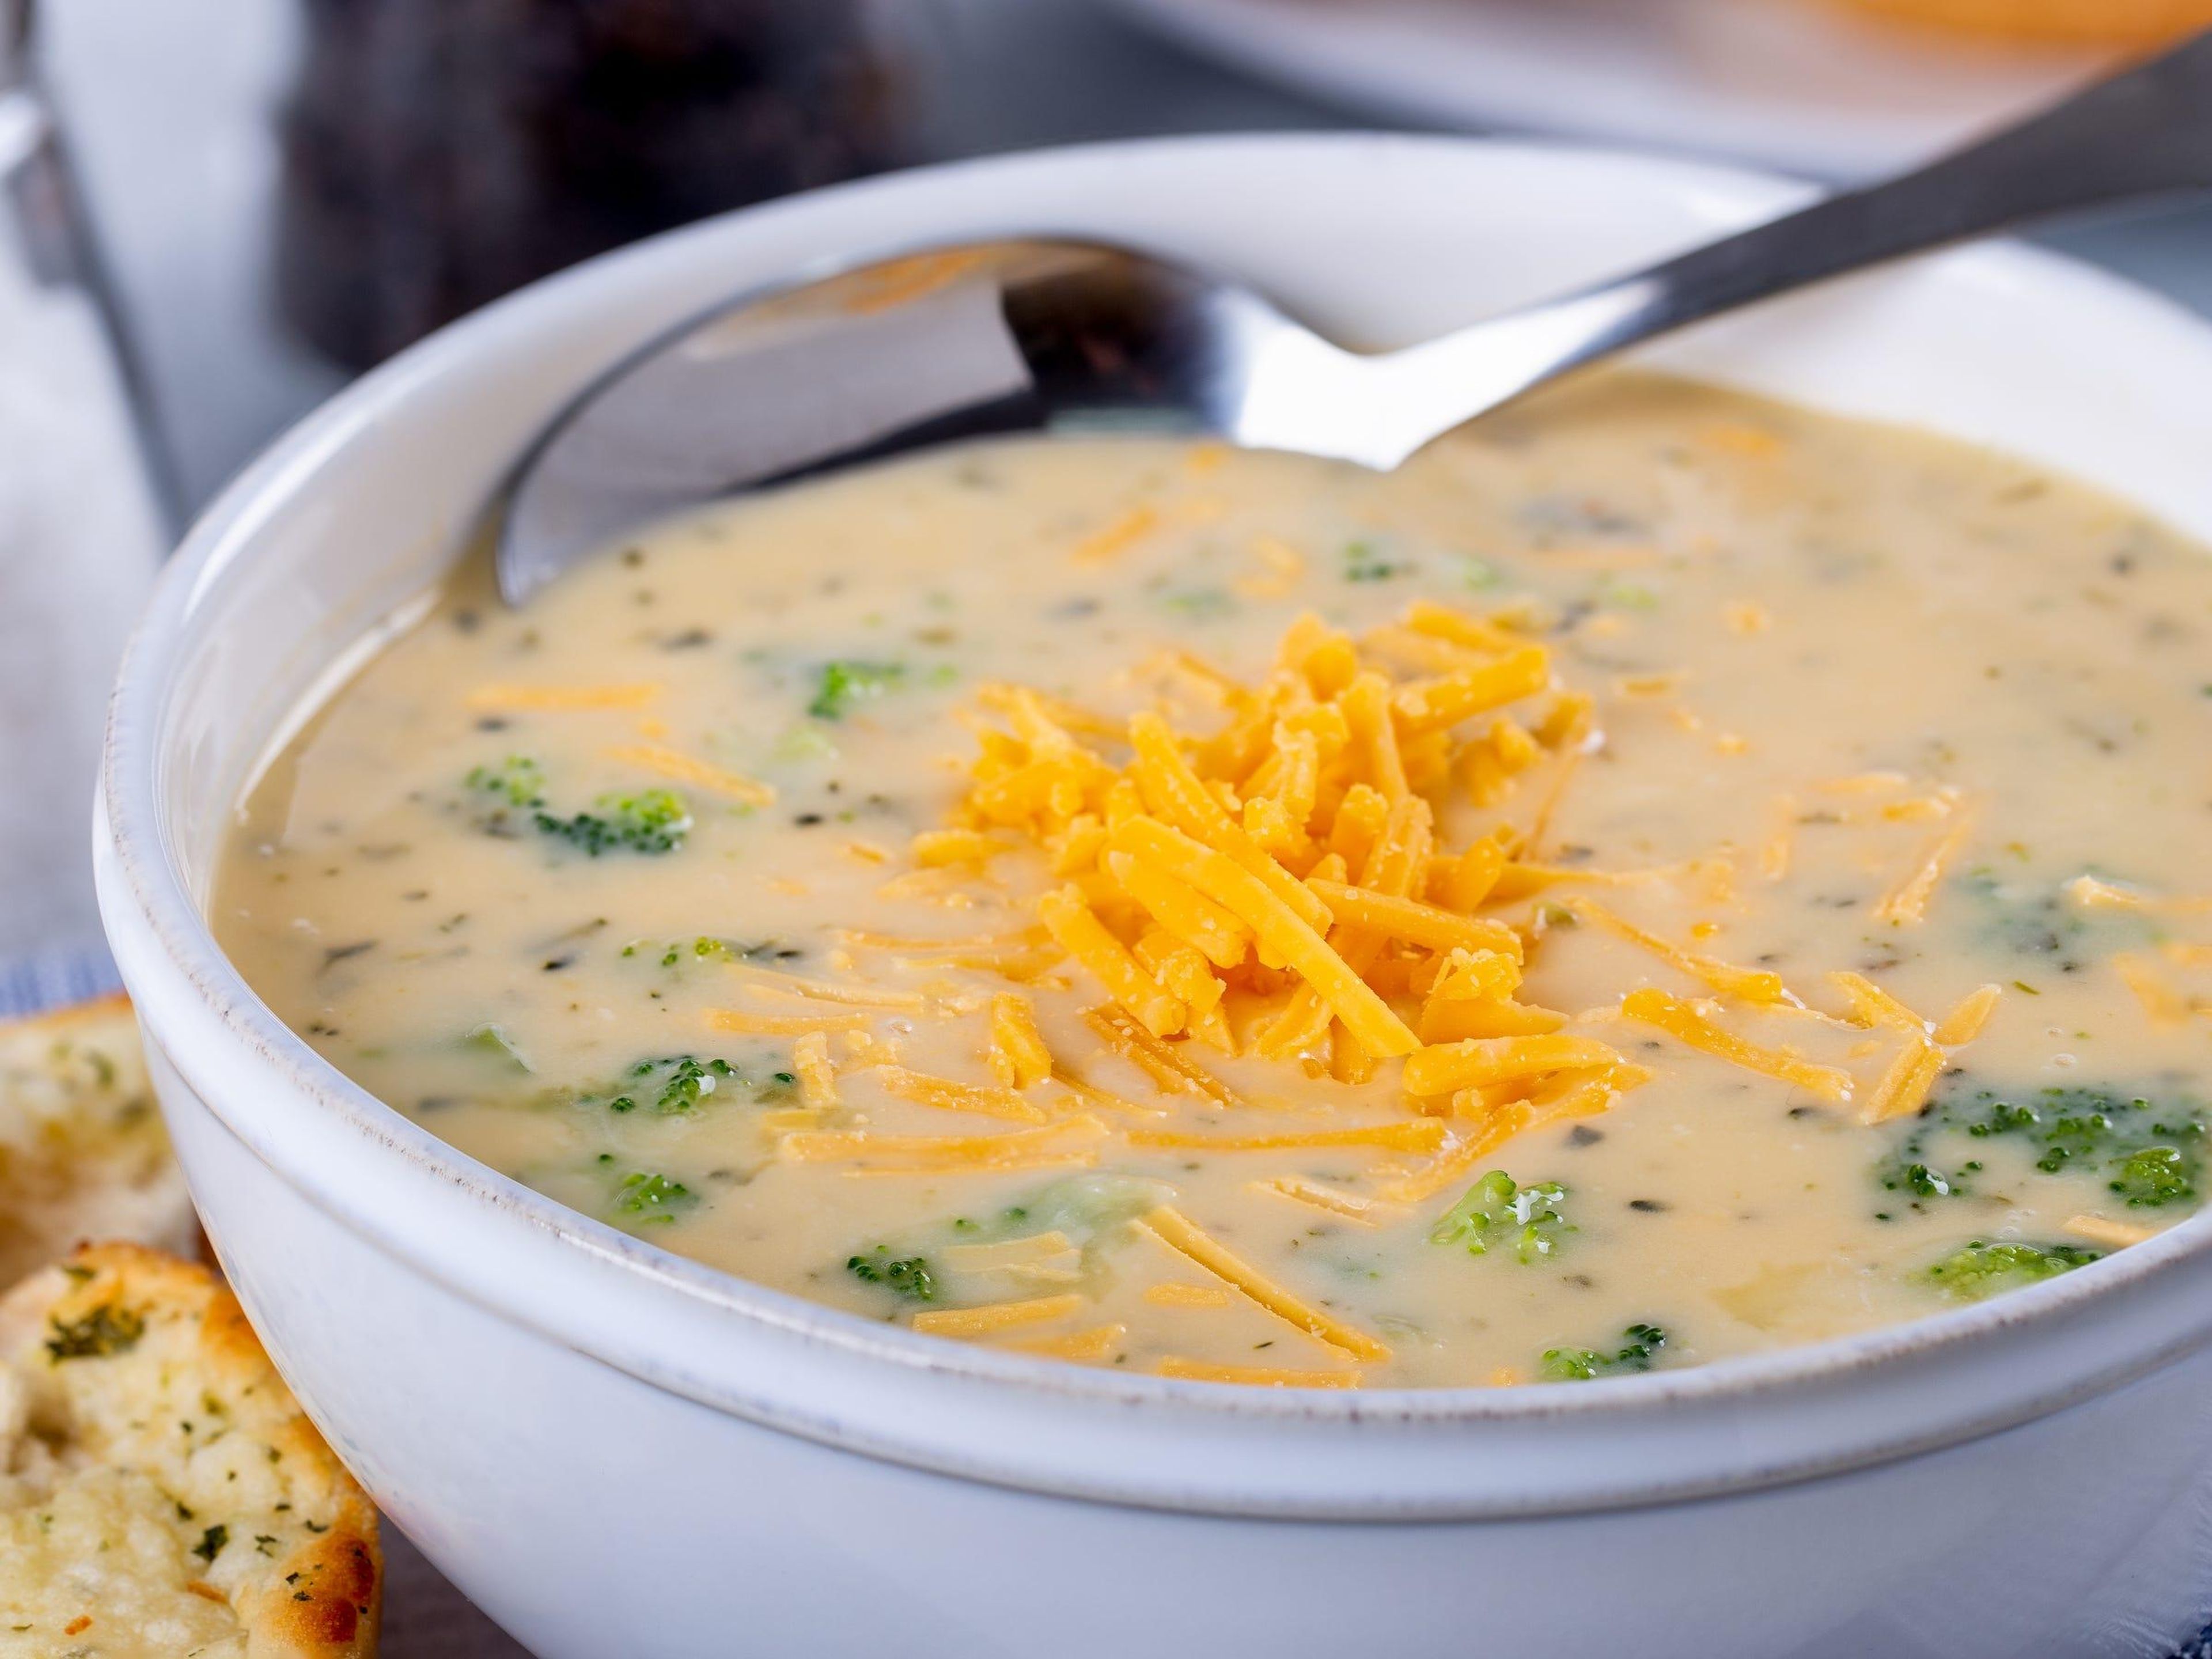 La sopa congelada puede mantener su calidad después de descongelarla.